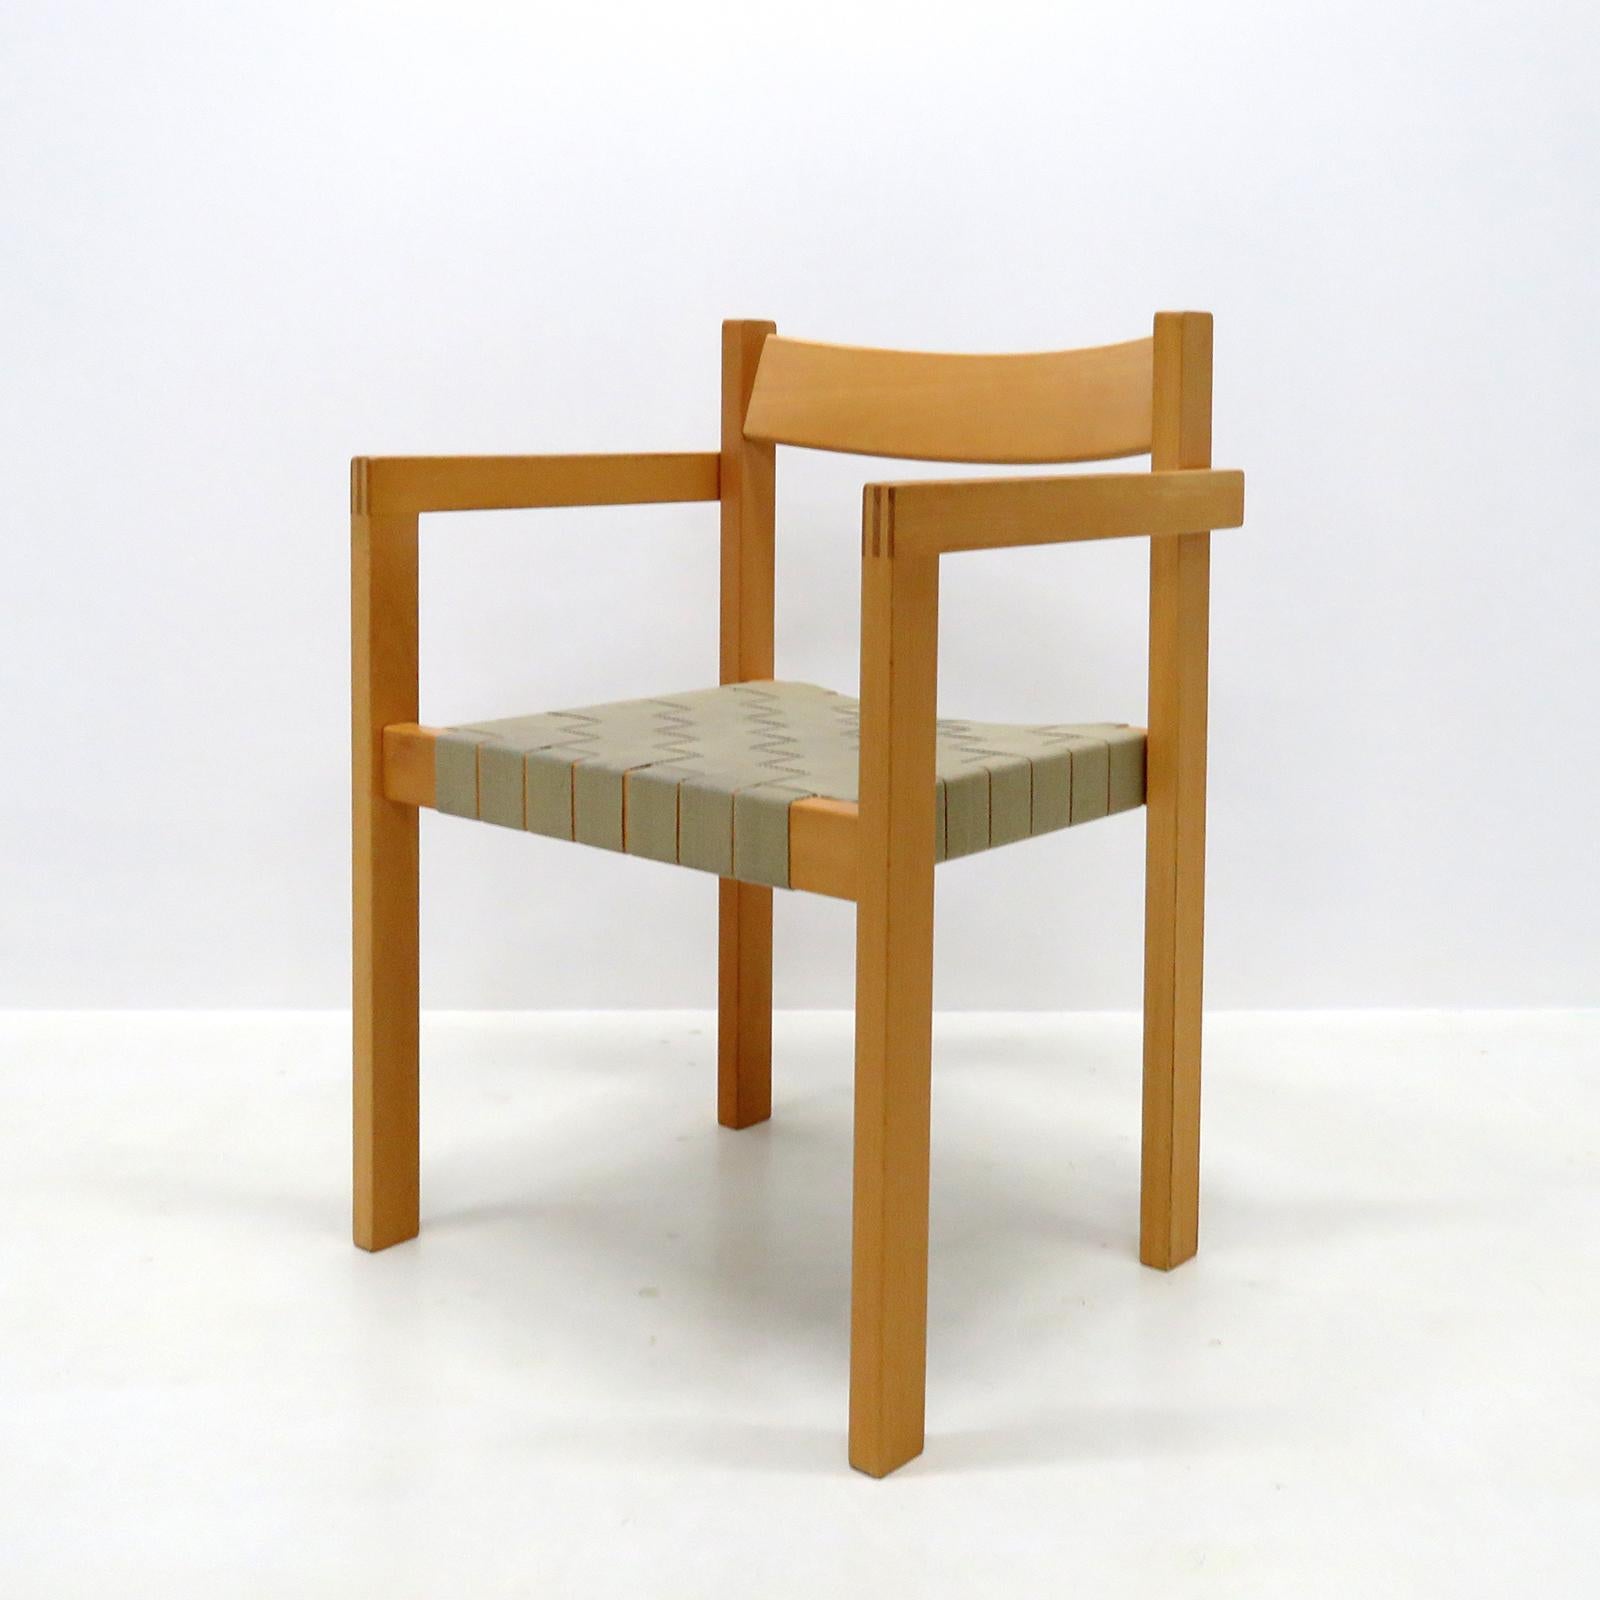 Magnifiques chaises d'appoint 'Koldinghus' de Hans Wegner datant des années 1970, avec accoudoirs, en chêne avec sangles en chanvre, empilables, très confortables. Les prix sont fixés à l'unité.